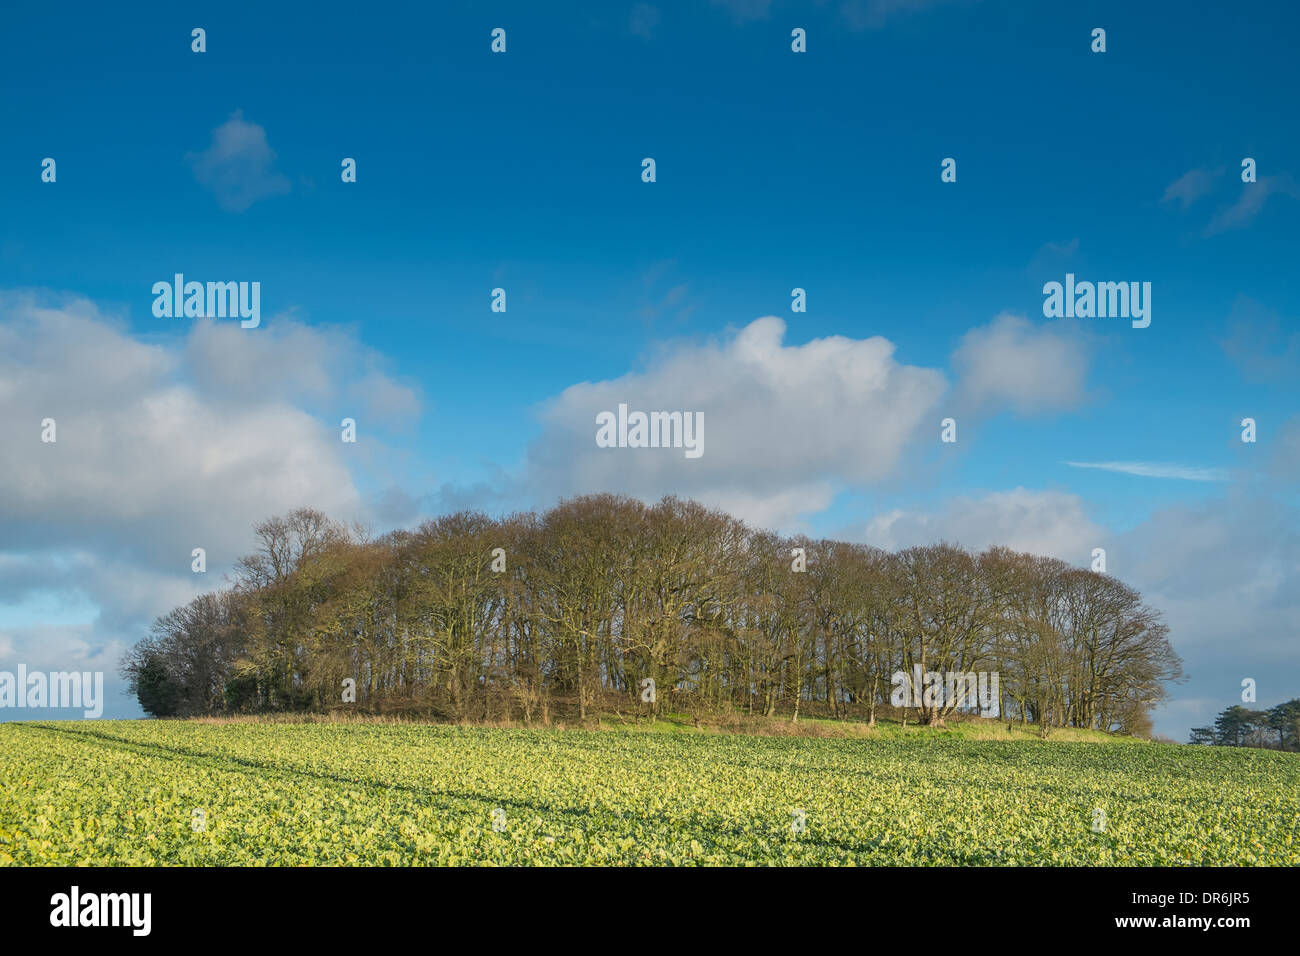 Tumulus on arable field, Norfolk, January. Stock Photo